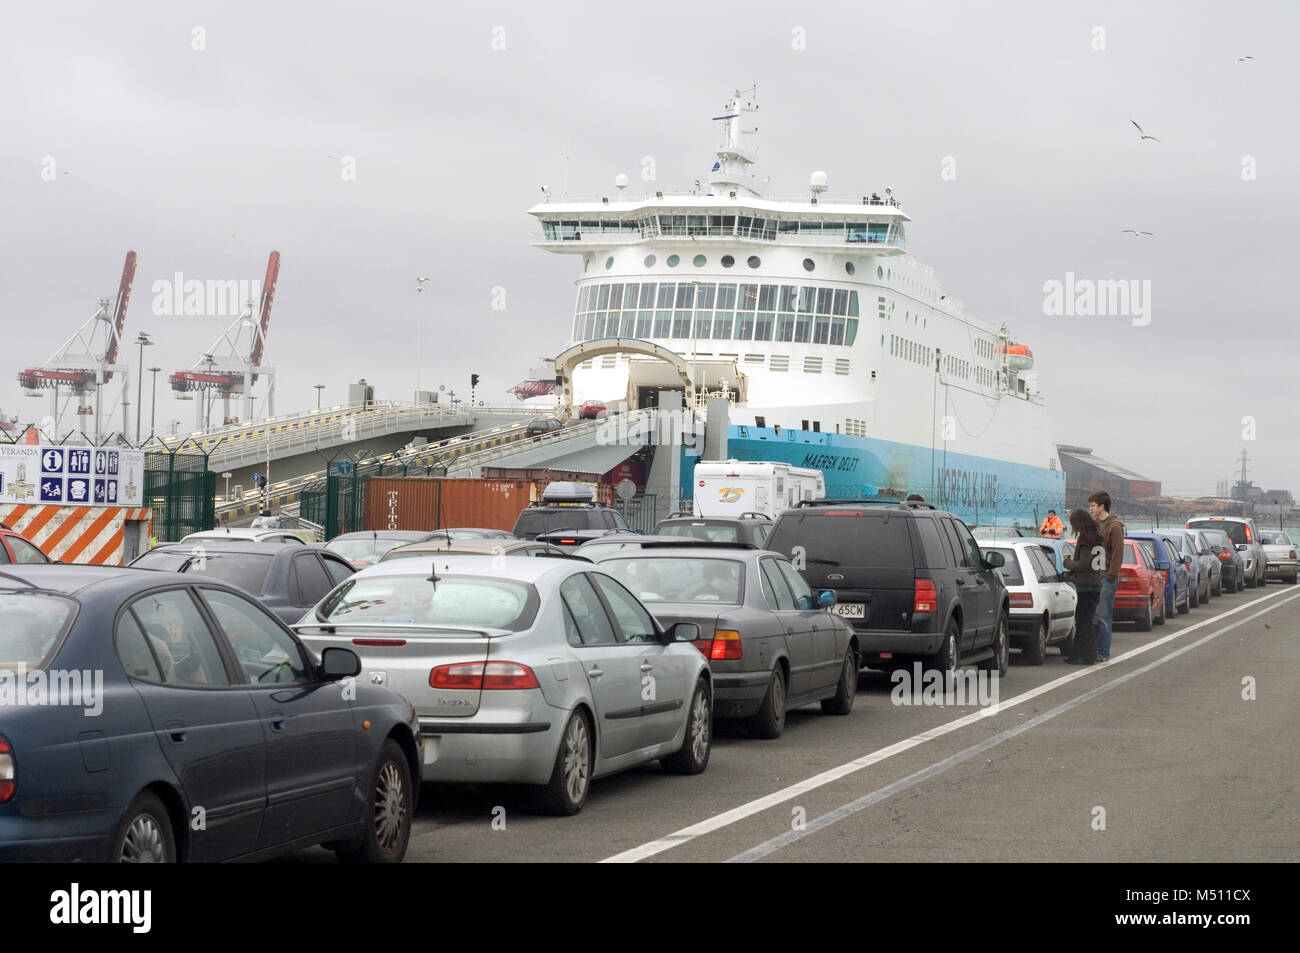 Les voitures et autres véhicules attendre à bord du cross Channel Norfolkline ferry passagers et de Dunkerque à Douvres. 2007 Banque D'Images